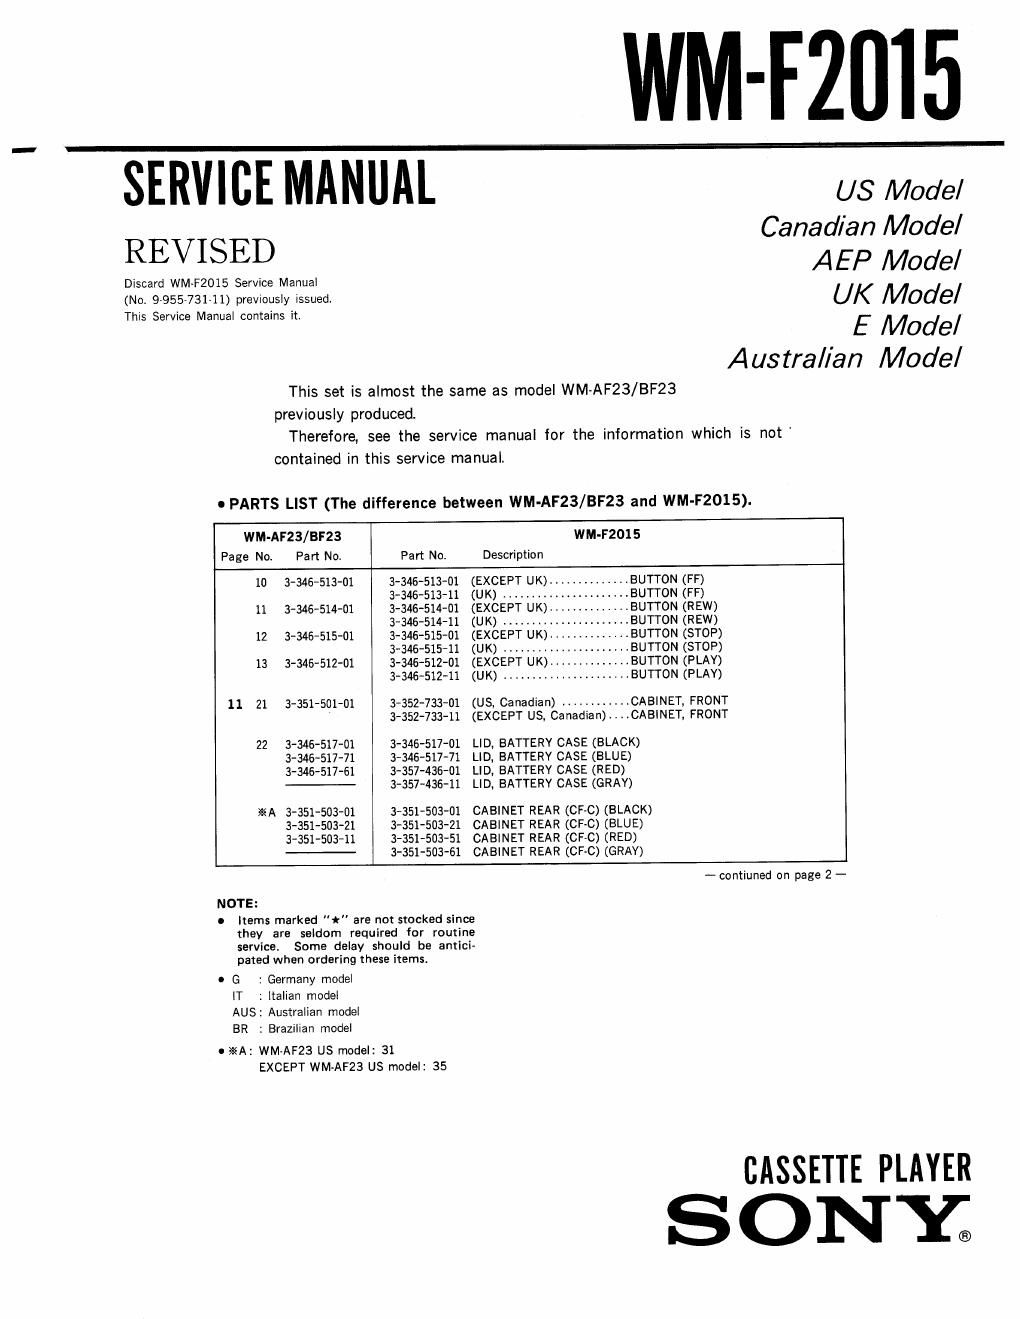 sony wm f 2015 service manual